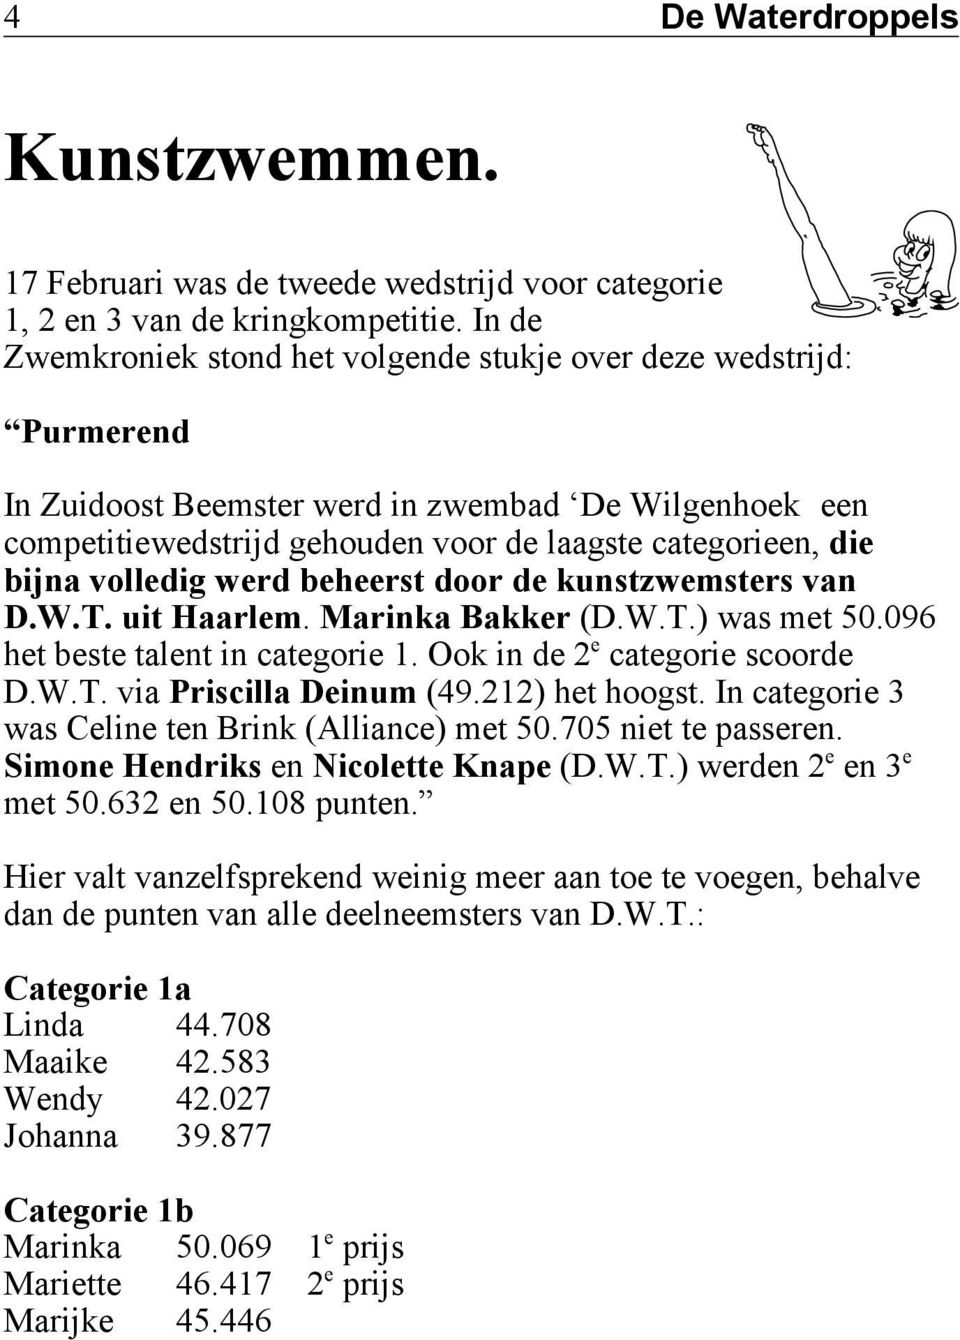 volledig werd beheerst door de kunstzwemsters van D.W.T. uit Haarlem. Marinka Bakker (D.W.T.) was met 50.096 e het beste talent in categorie 1. Ook in de 2 categorie scoorde D.W.T. via Priscilla Deinum (49.